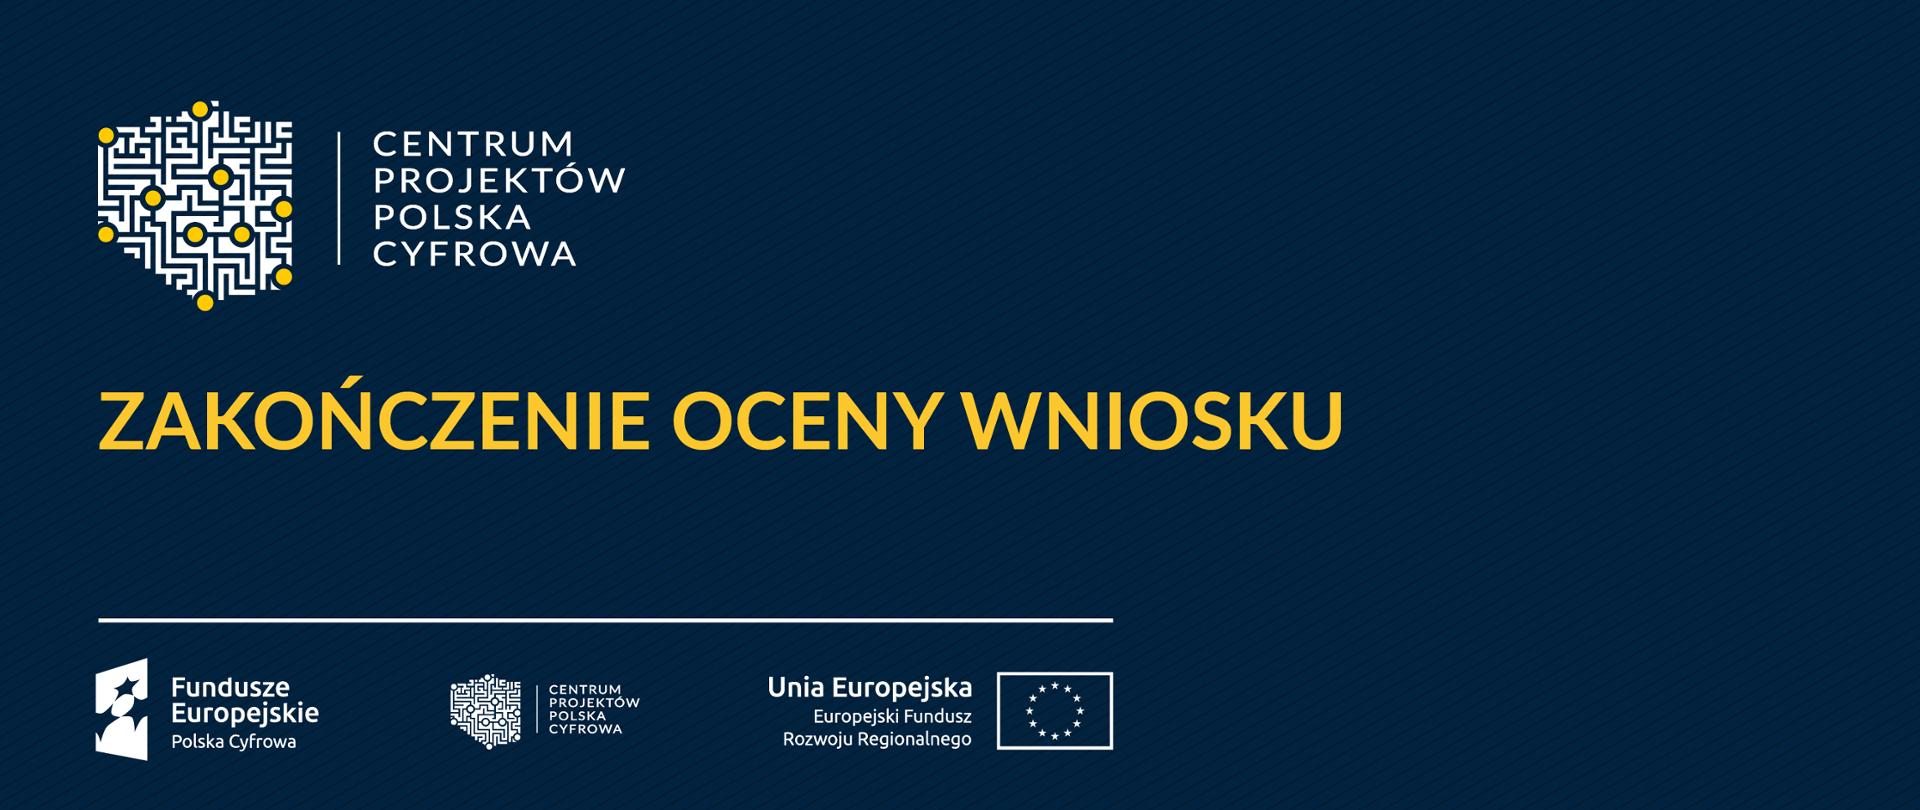 Baner: Zakończenie oceny wniosku. Logociąg: Fundusze Europejskie Polska Cyfrowa, Centrum Projektów Polska Cyfrowa oraz Unia Europejska Europejski Fundusz Rozwoju Regionalnego.